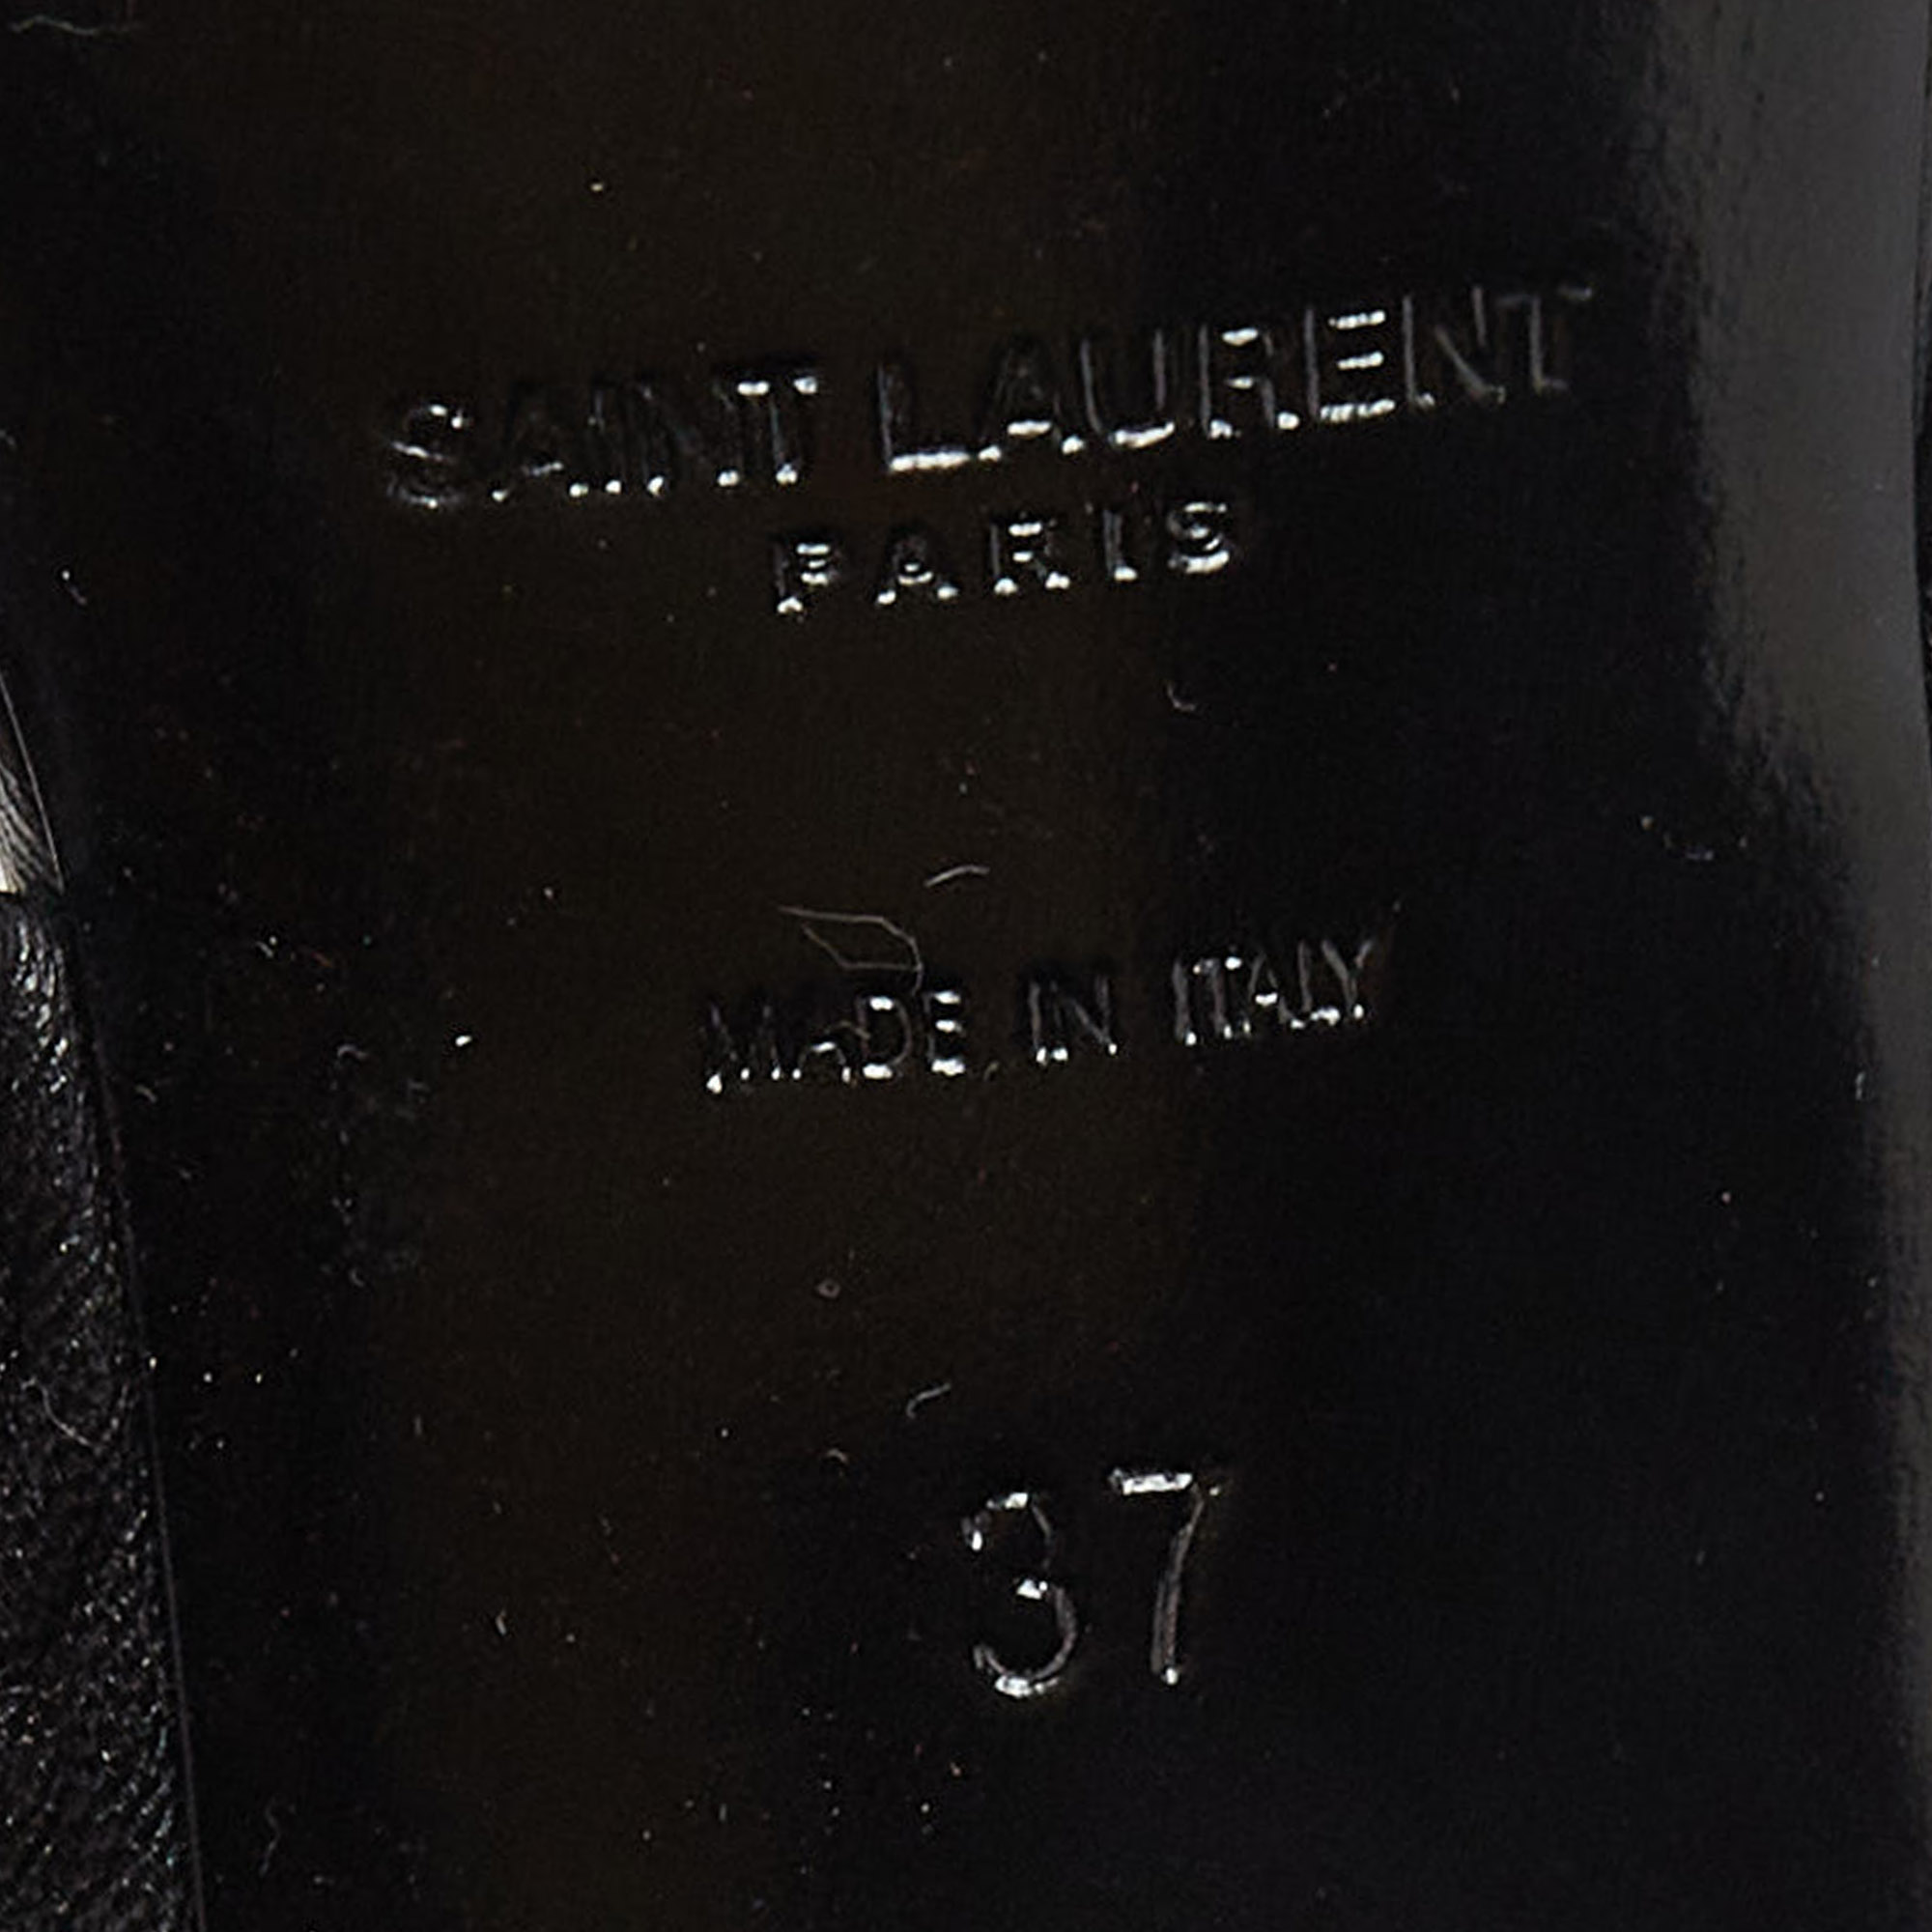 Saint Laurent Black Leather Loulou Slide Sandals Size 37